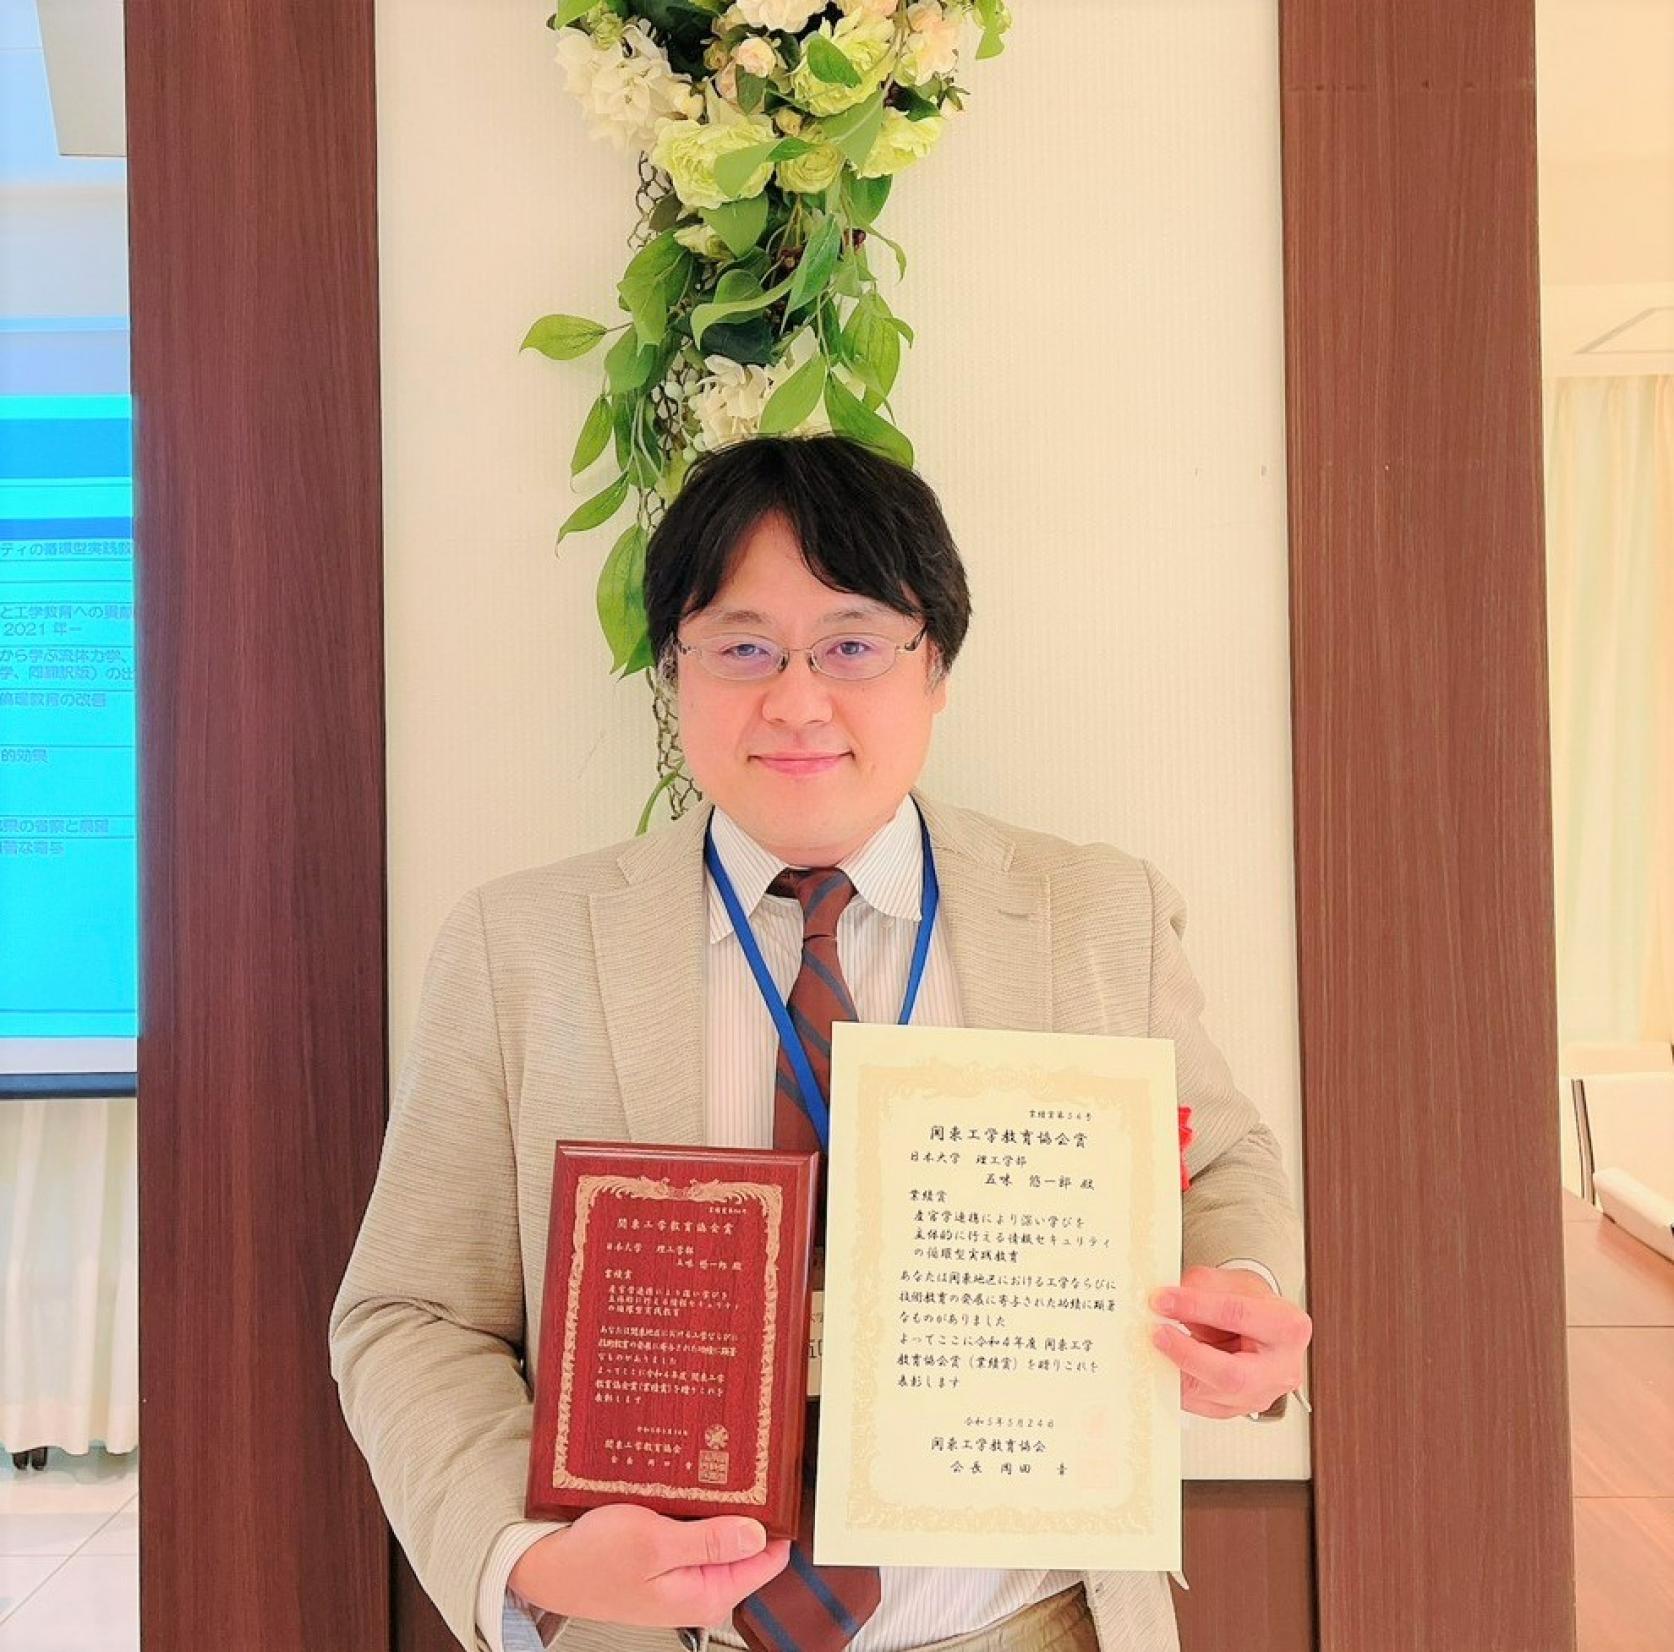 応用情報工学科 五味悠一郎准教授が関東工学教育協会定時総会において、「関東工学教育協会賞 業績賞」を受賞しました。